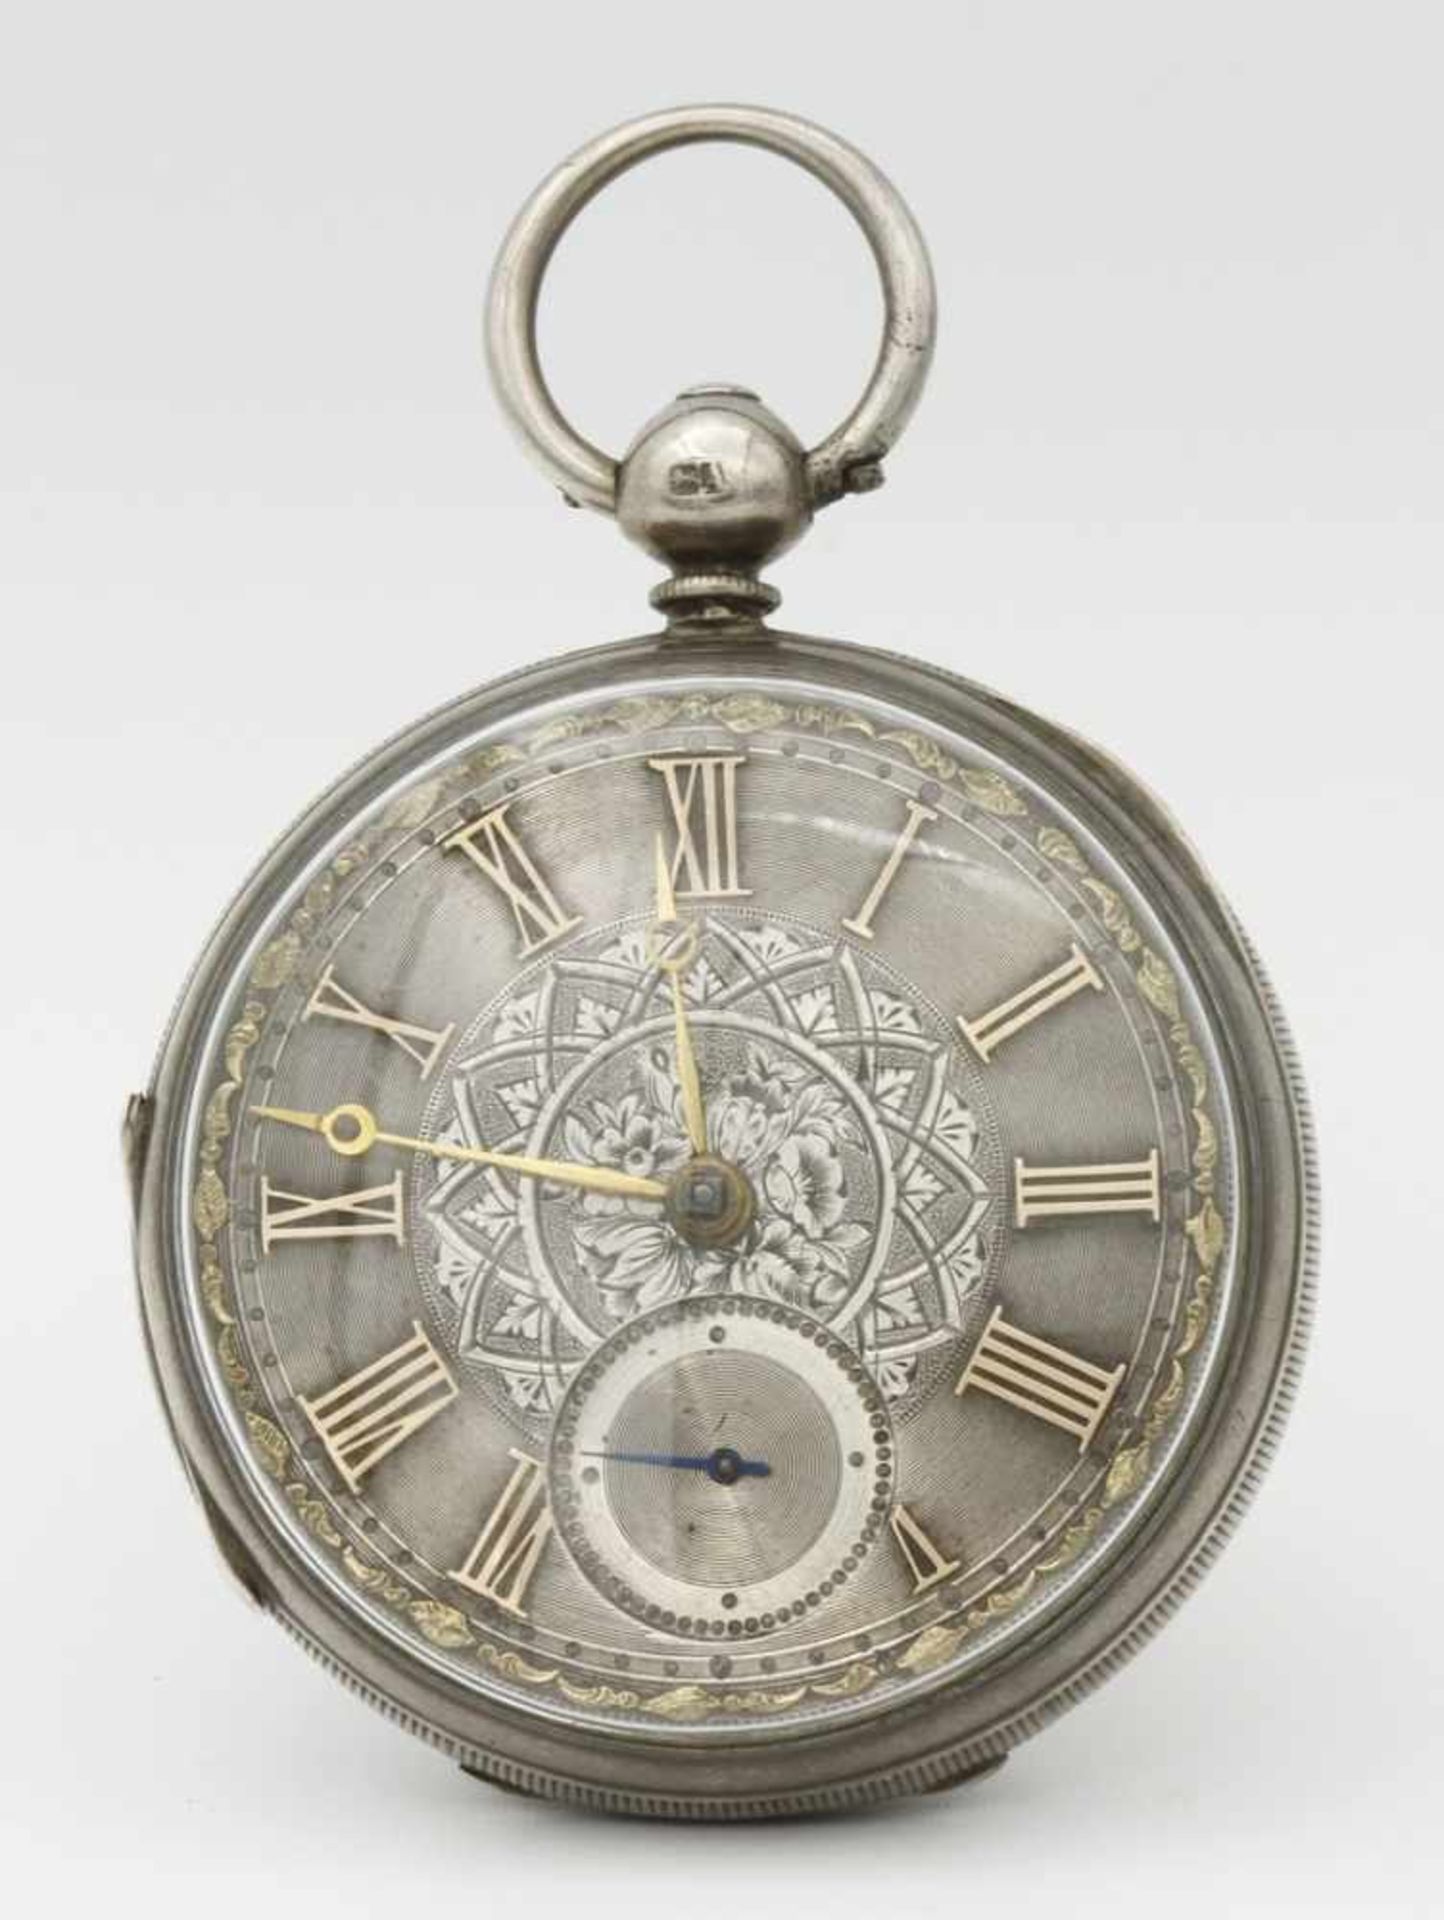 Aufwendig verzierte englische Silbertaschenuhr, um 1870 - Bild 2 aus 7